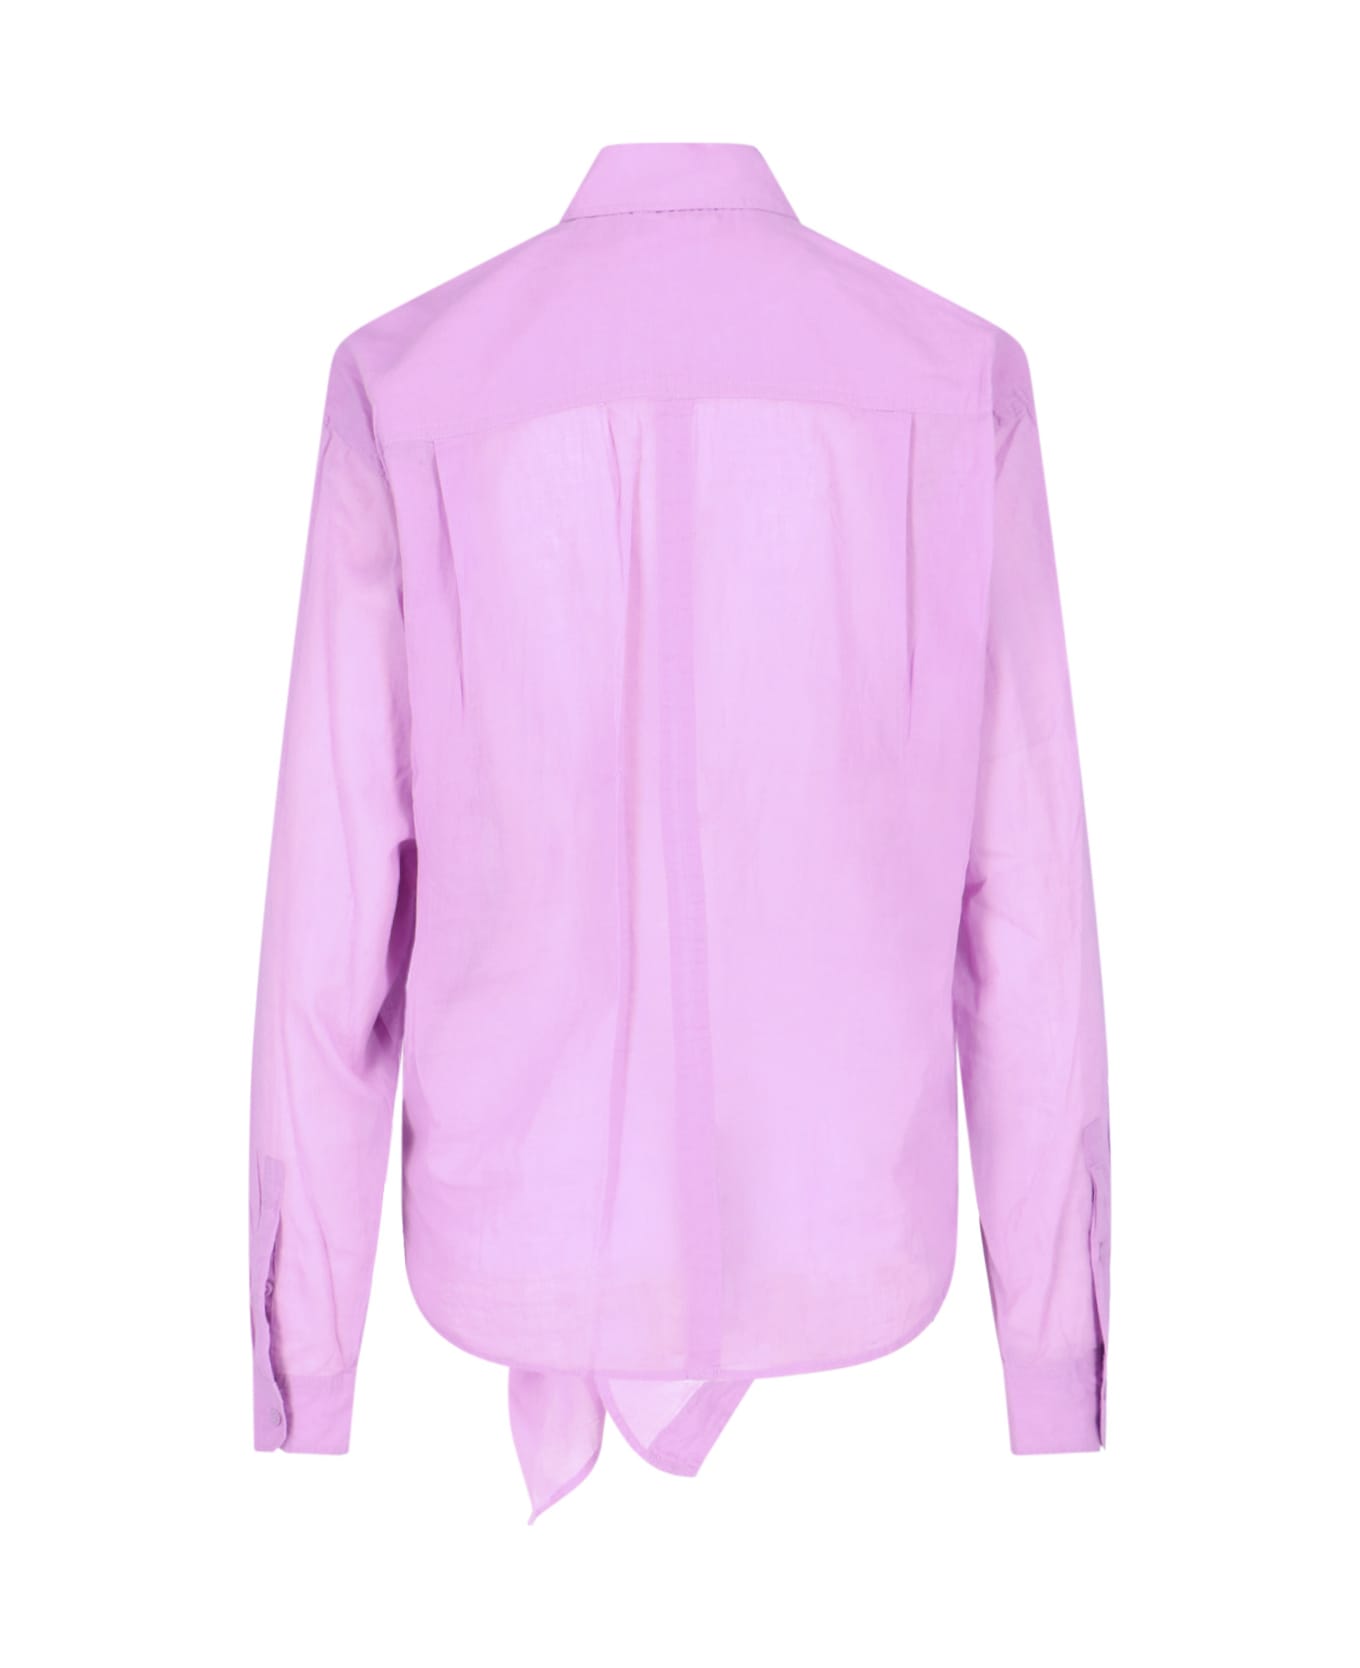 Marant Étoile Nath Cotton Shirt - Violet